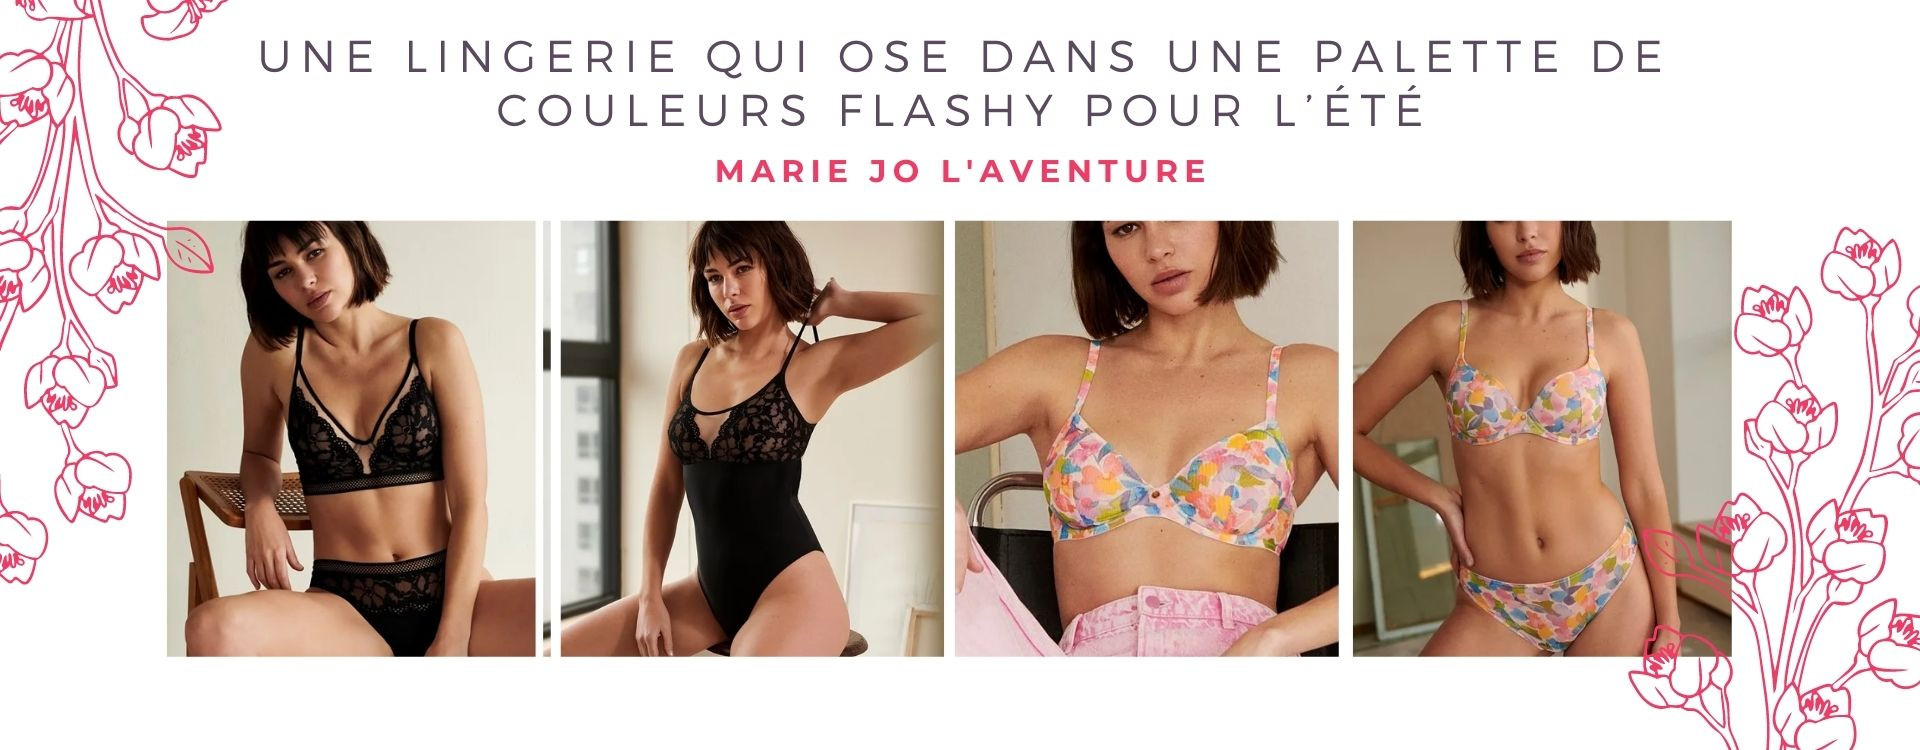 Retrouvez Marie Jo l'Aventure, une lingerie qui ose dans une palette de couleurs flashy pour l’été